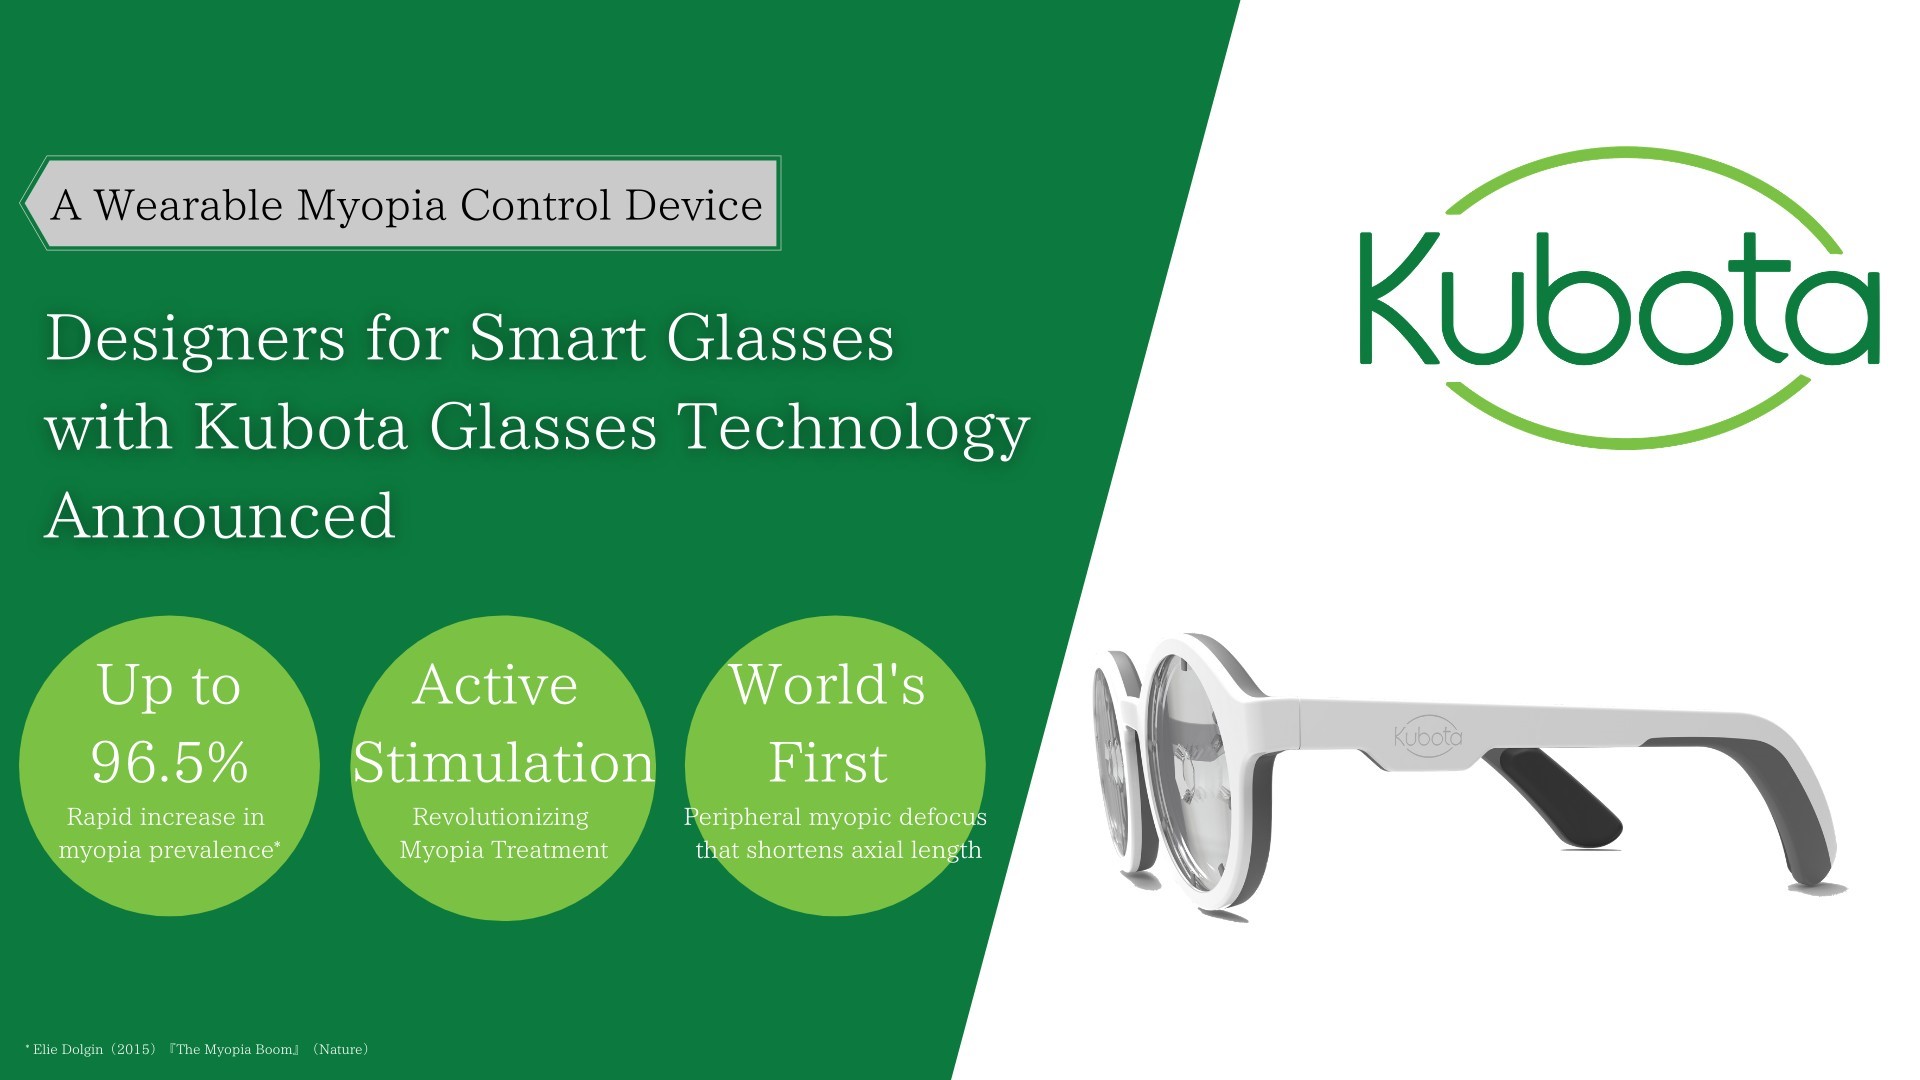 Smart Glasses Based on Kubota Glasses Technology